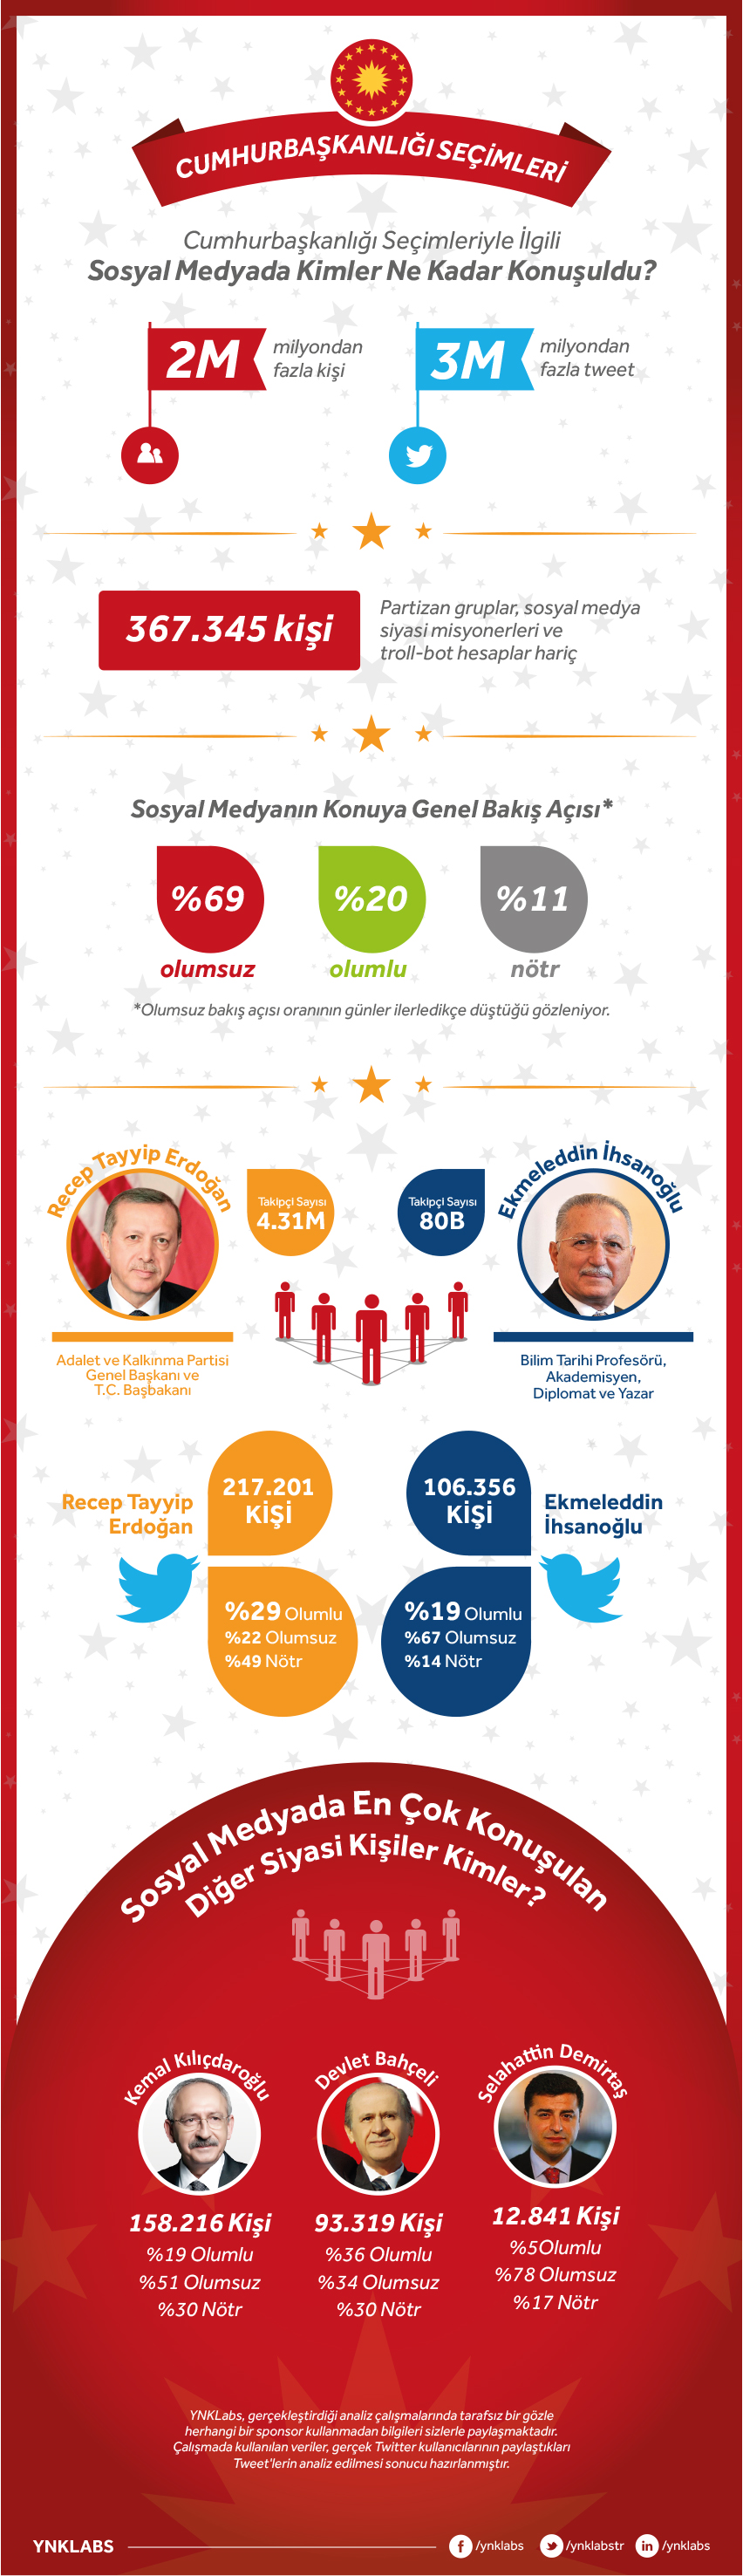 Cumhurbaşkanlığı Seçimlerinin Sosyal Medya Yansıması – Infografik